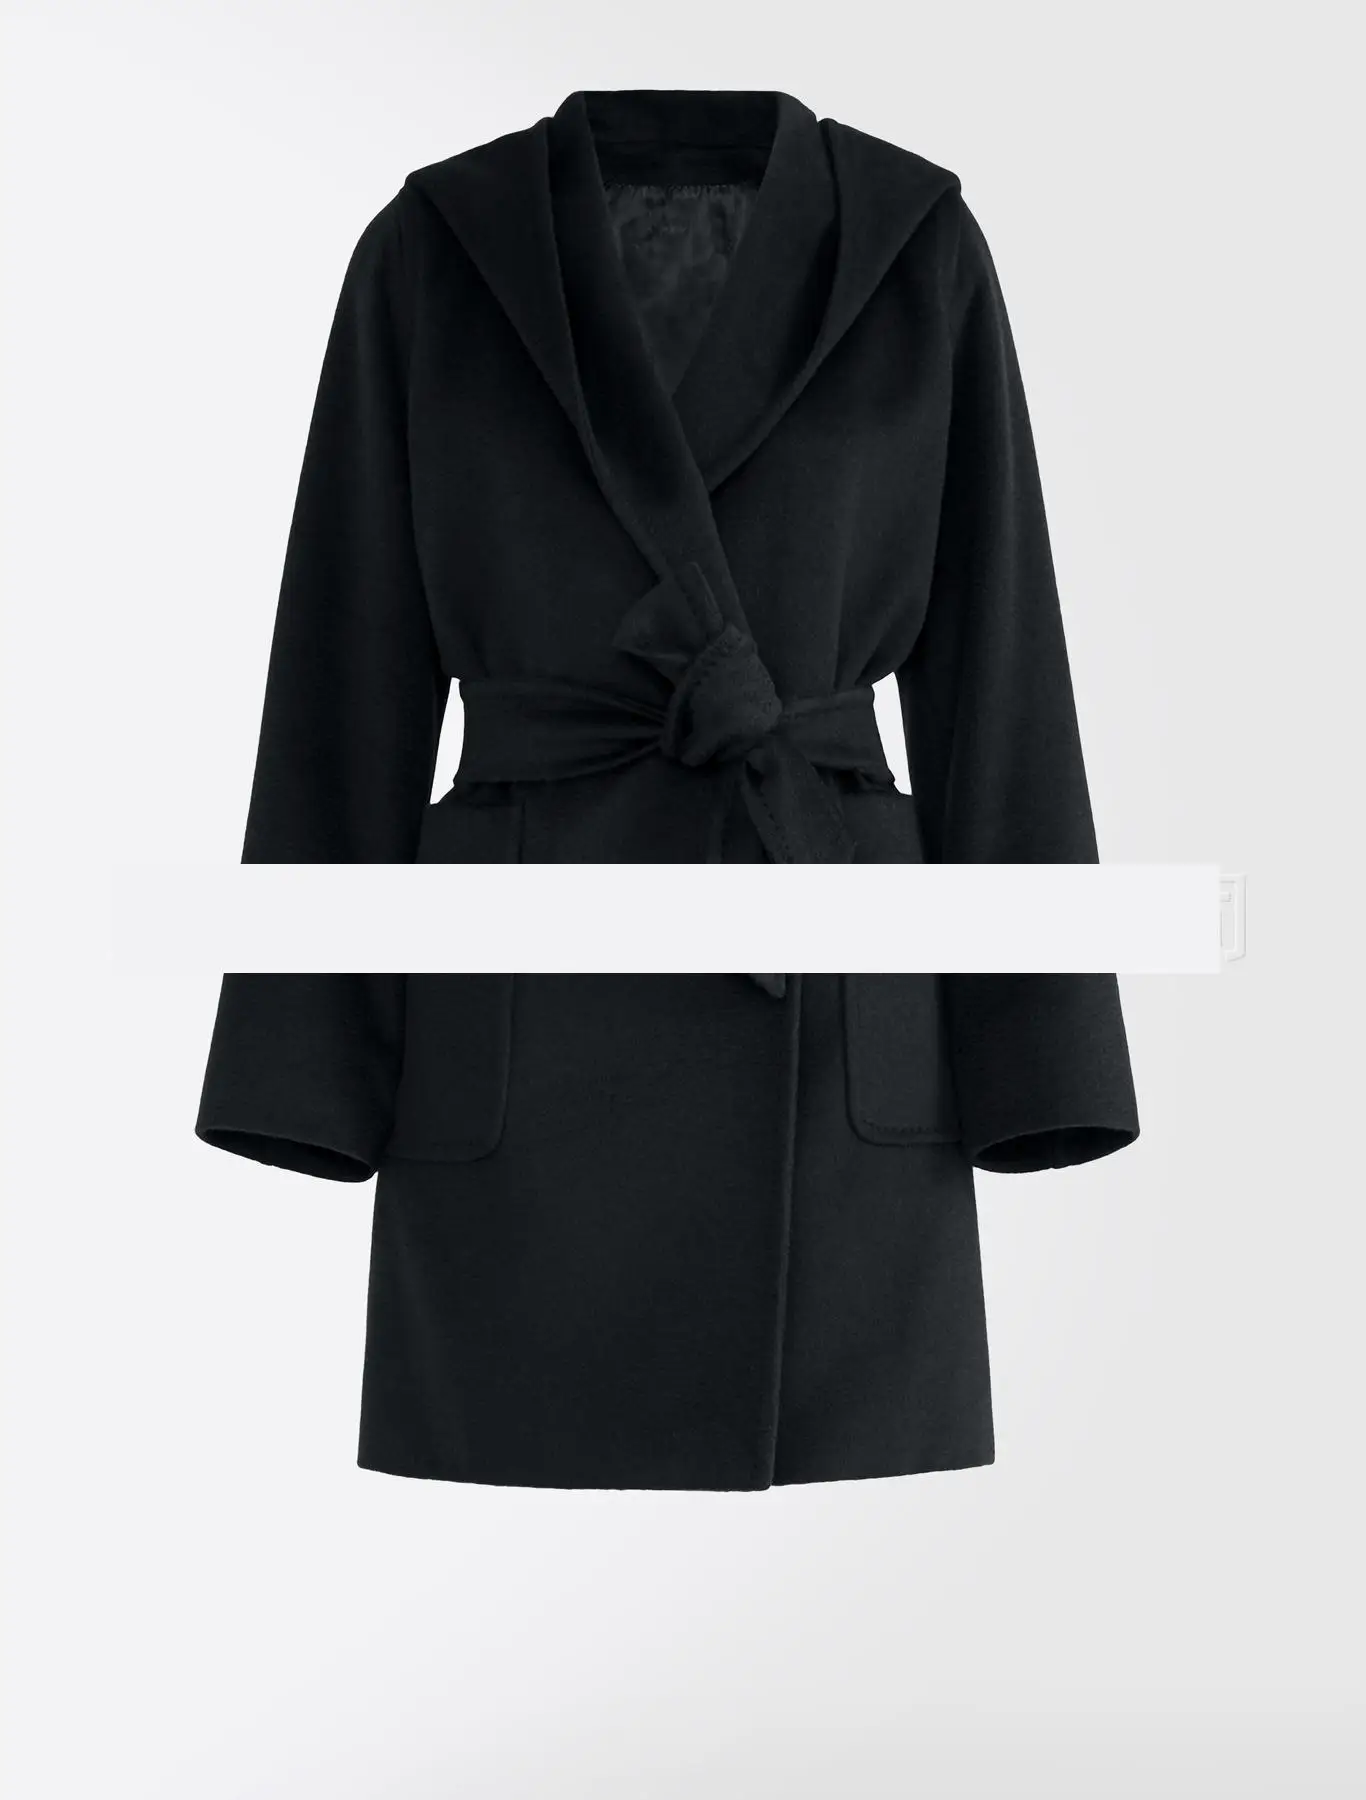 GETSPRING Женское пальто женское Шерстяное Пальто с капюшоном на повязке шерстяное пальто женское черное верблюжье винтажное длинное женское пальто Новая мода - Цвет: Navy blue